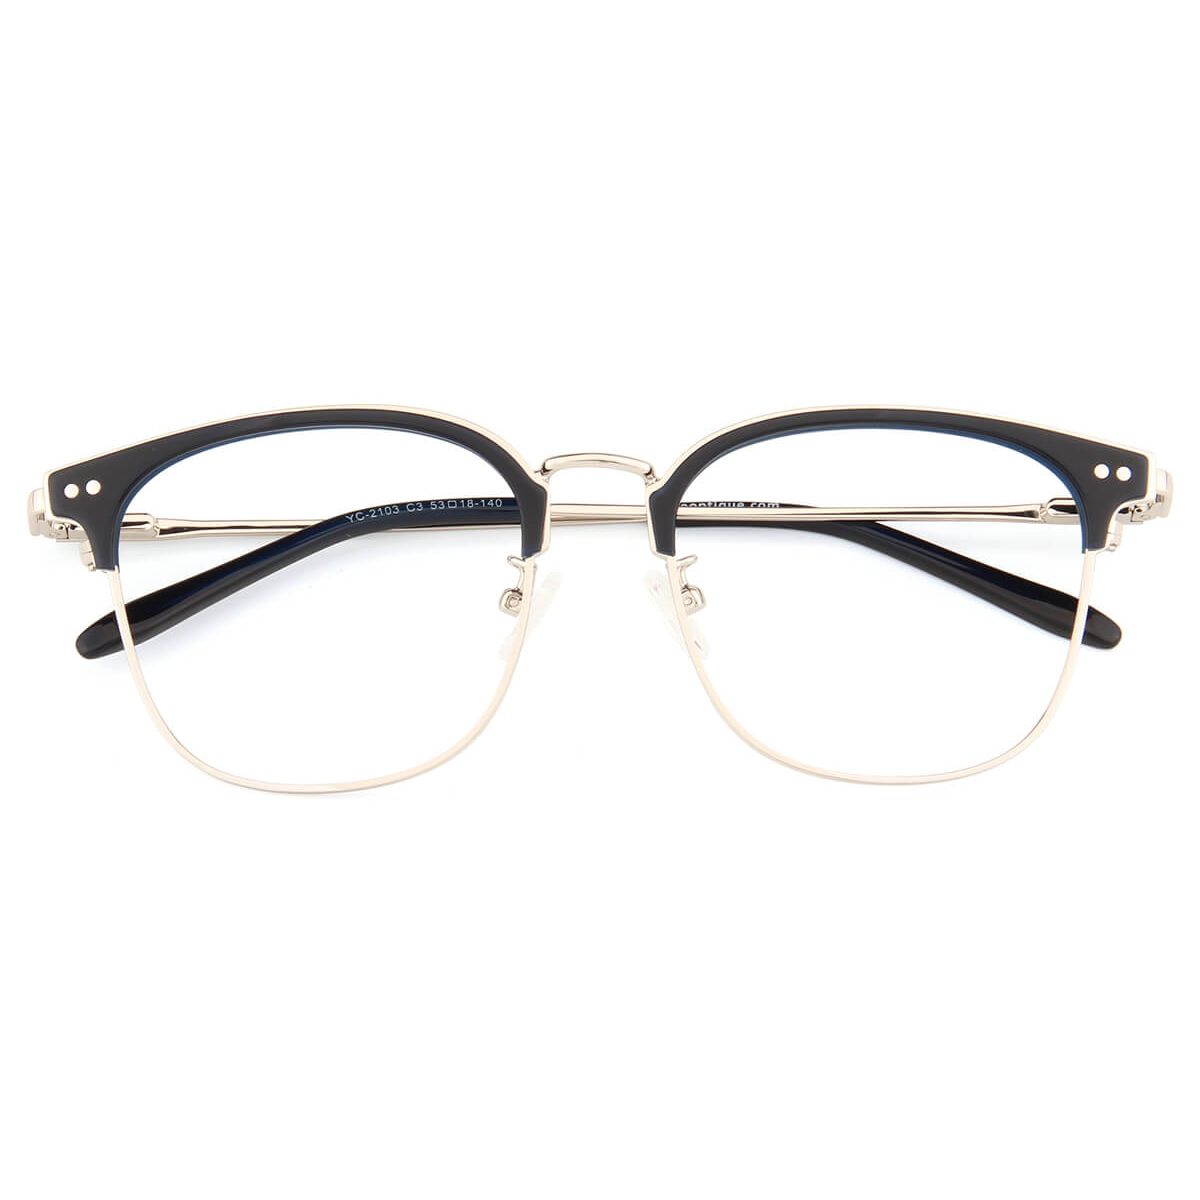 YC-2103 Oval Browline Black Eyeglasses Frames | Leoptique